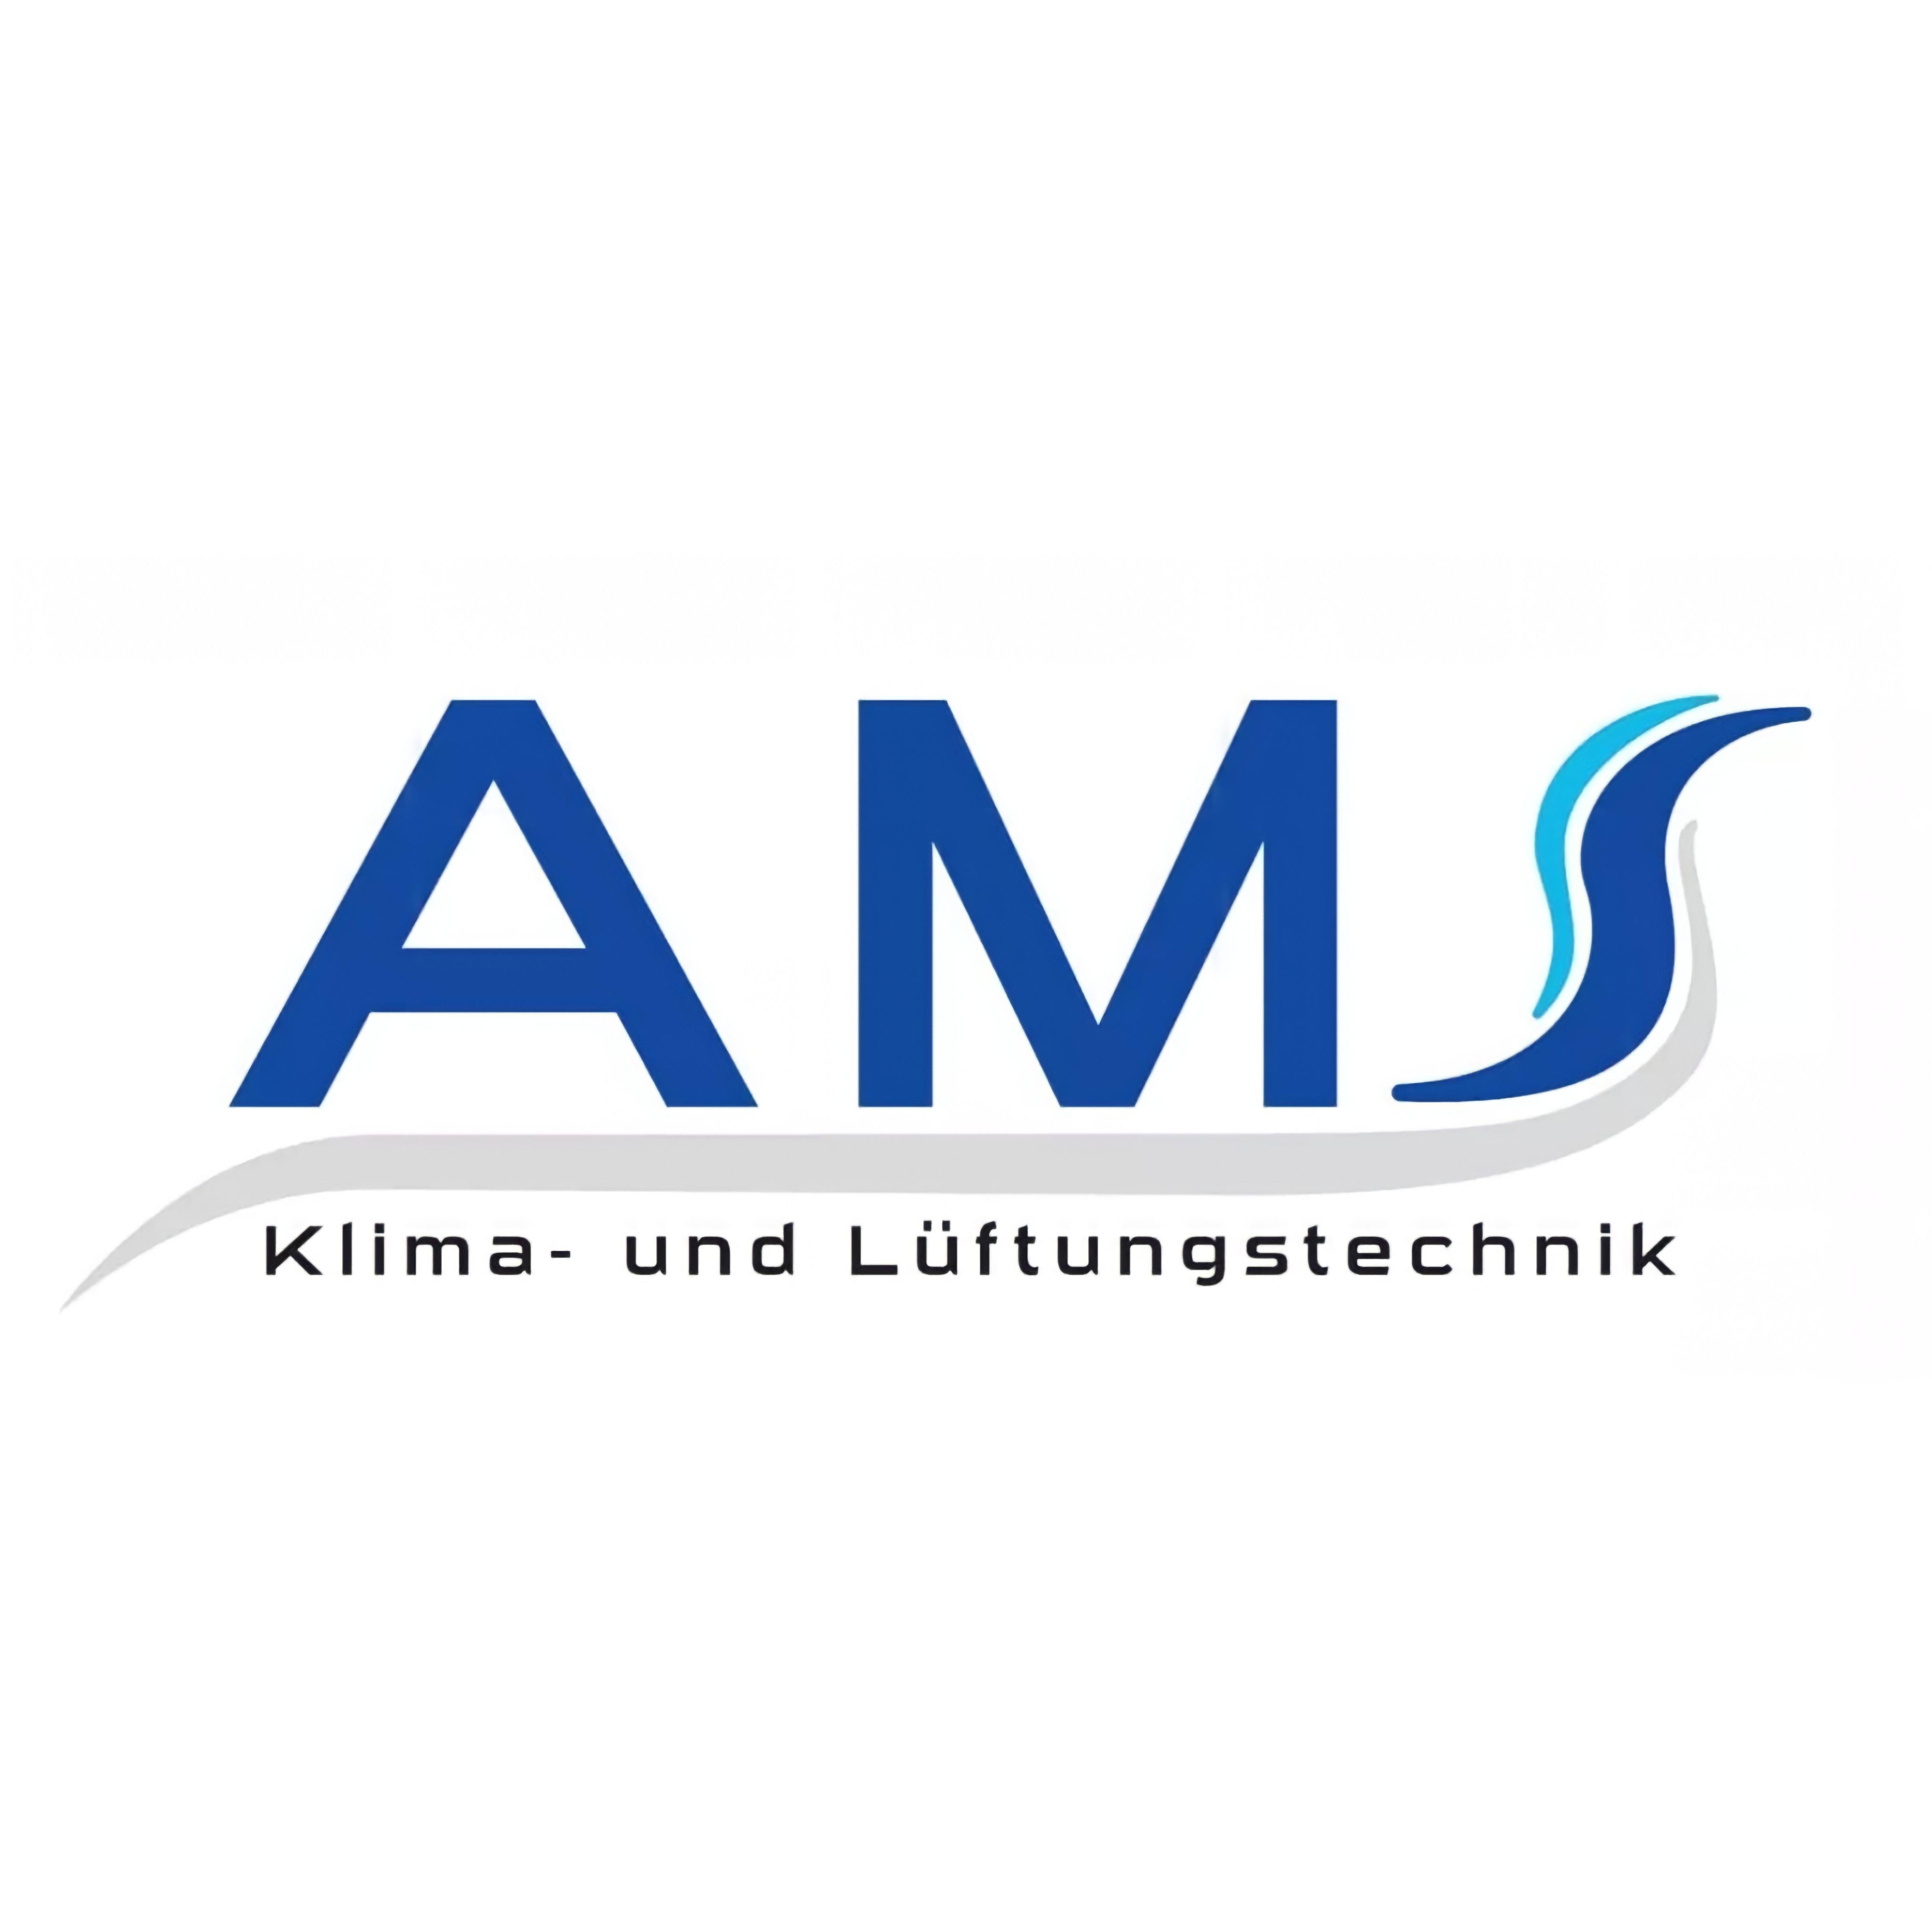 AMS Klima- und Lüftungstechnik GmbH & Co. KG logo